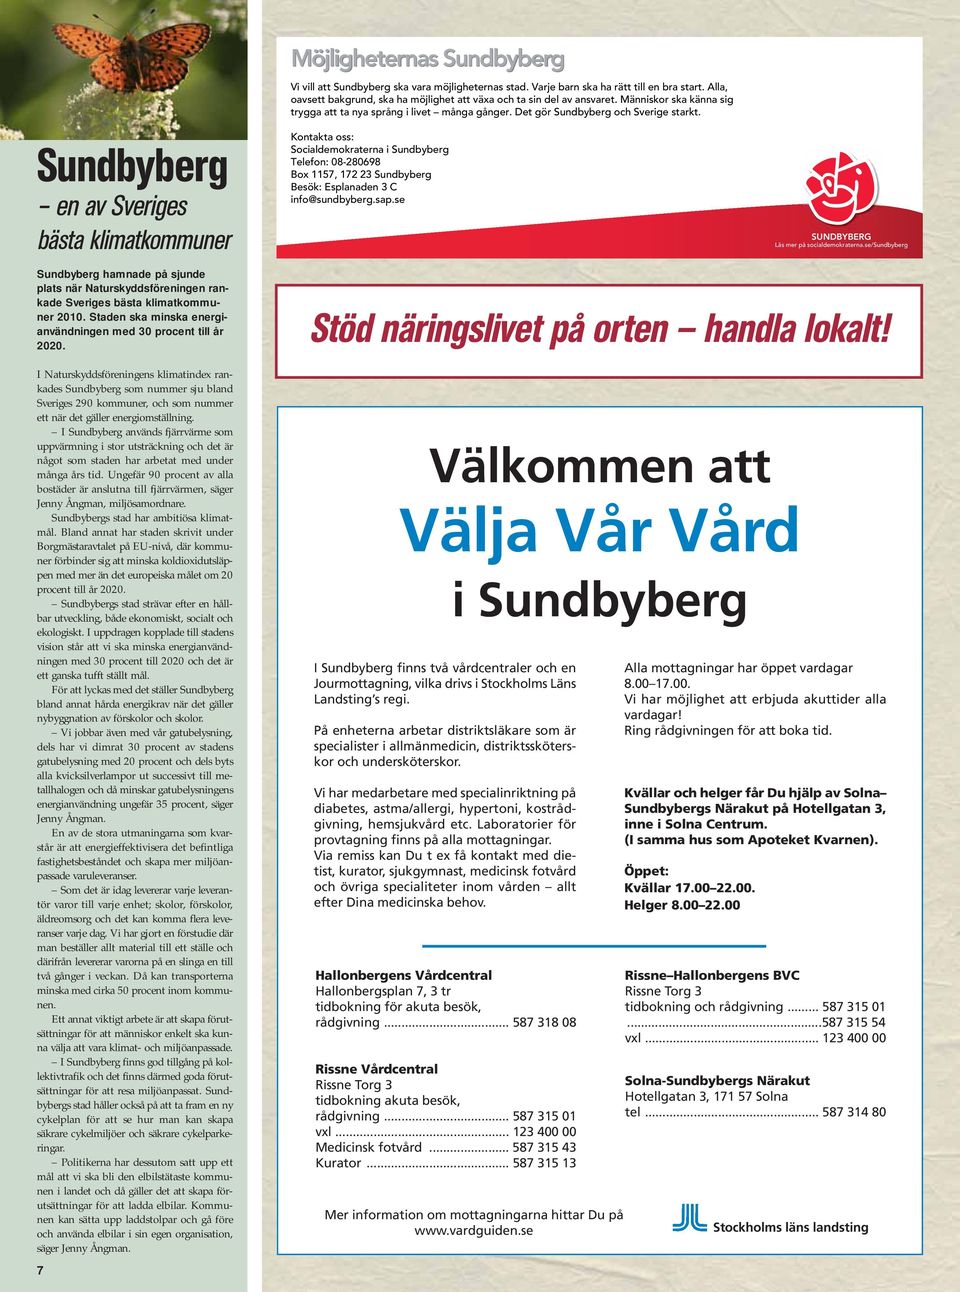 I Naturskyddsföreningens klimatindex rankades Sundbyberg som nummer sju bland Sveriges 290 kommuner, och som nummer ett när det gäller energiomställning.